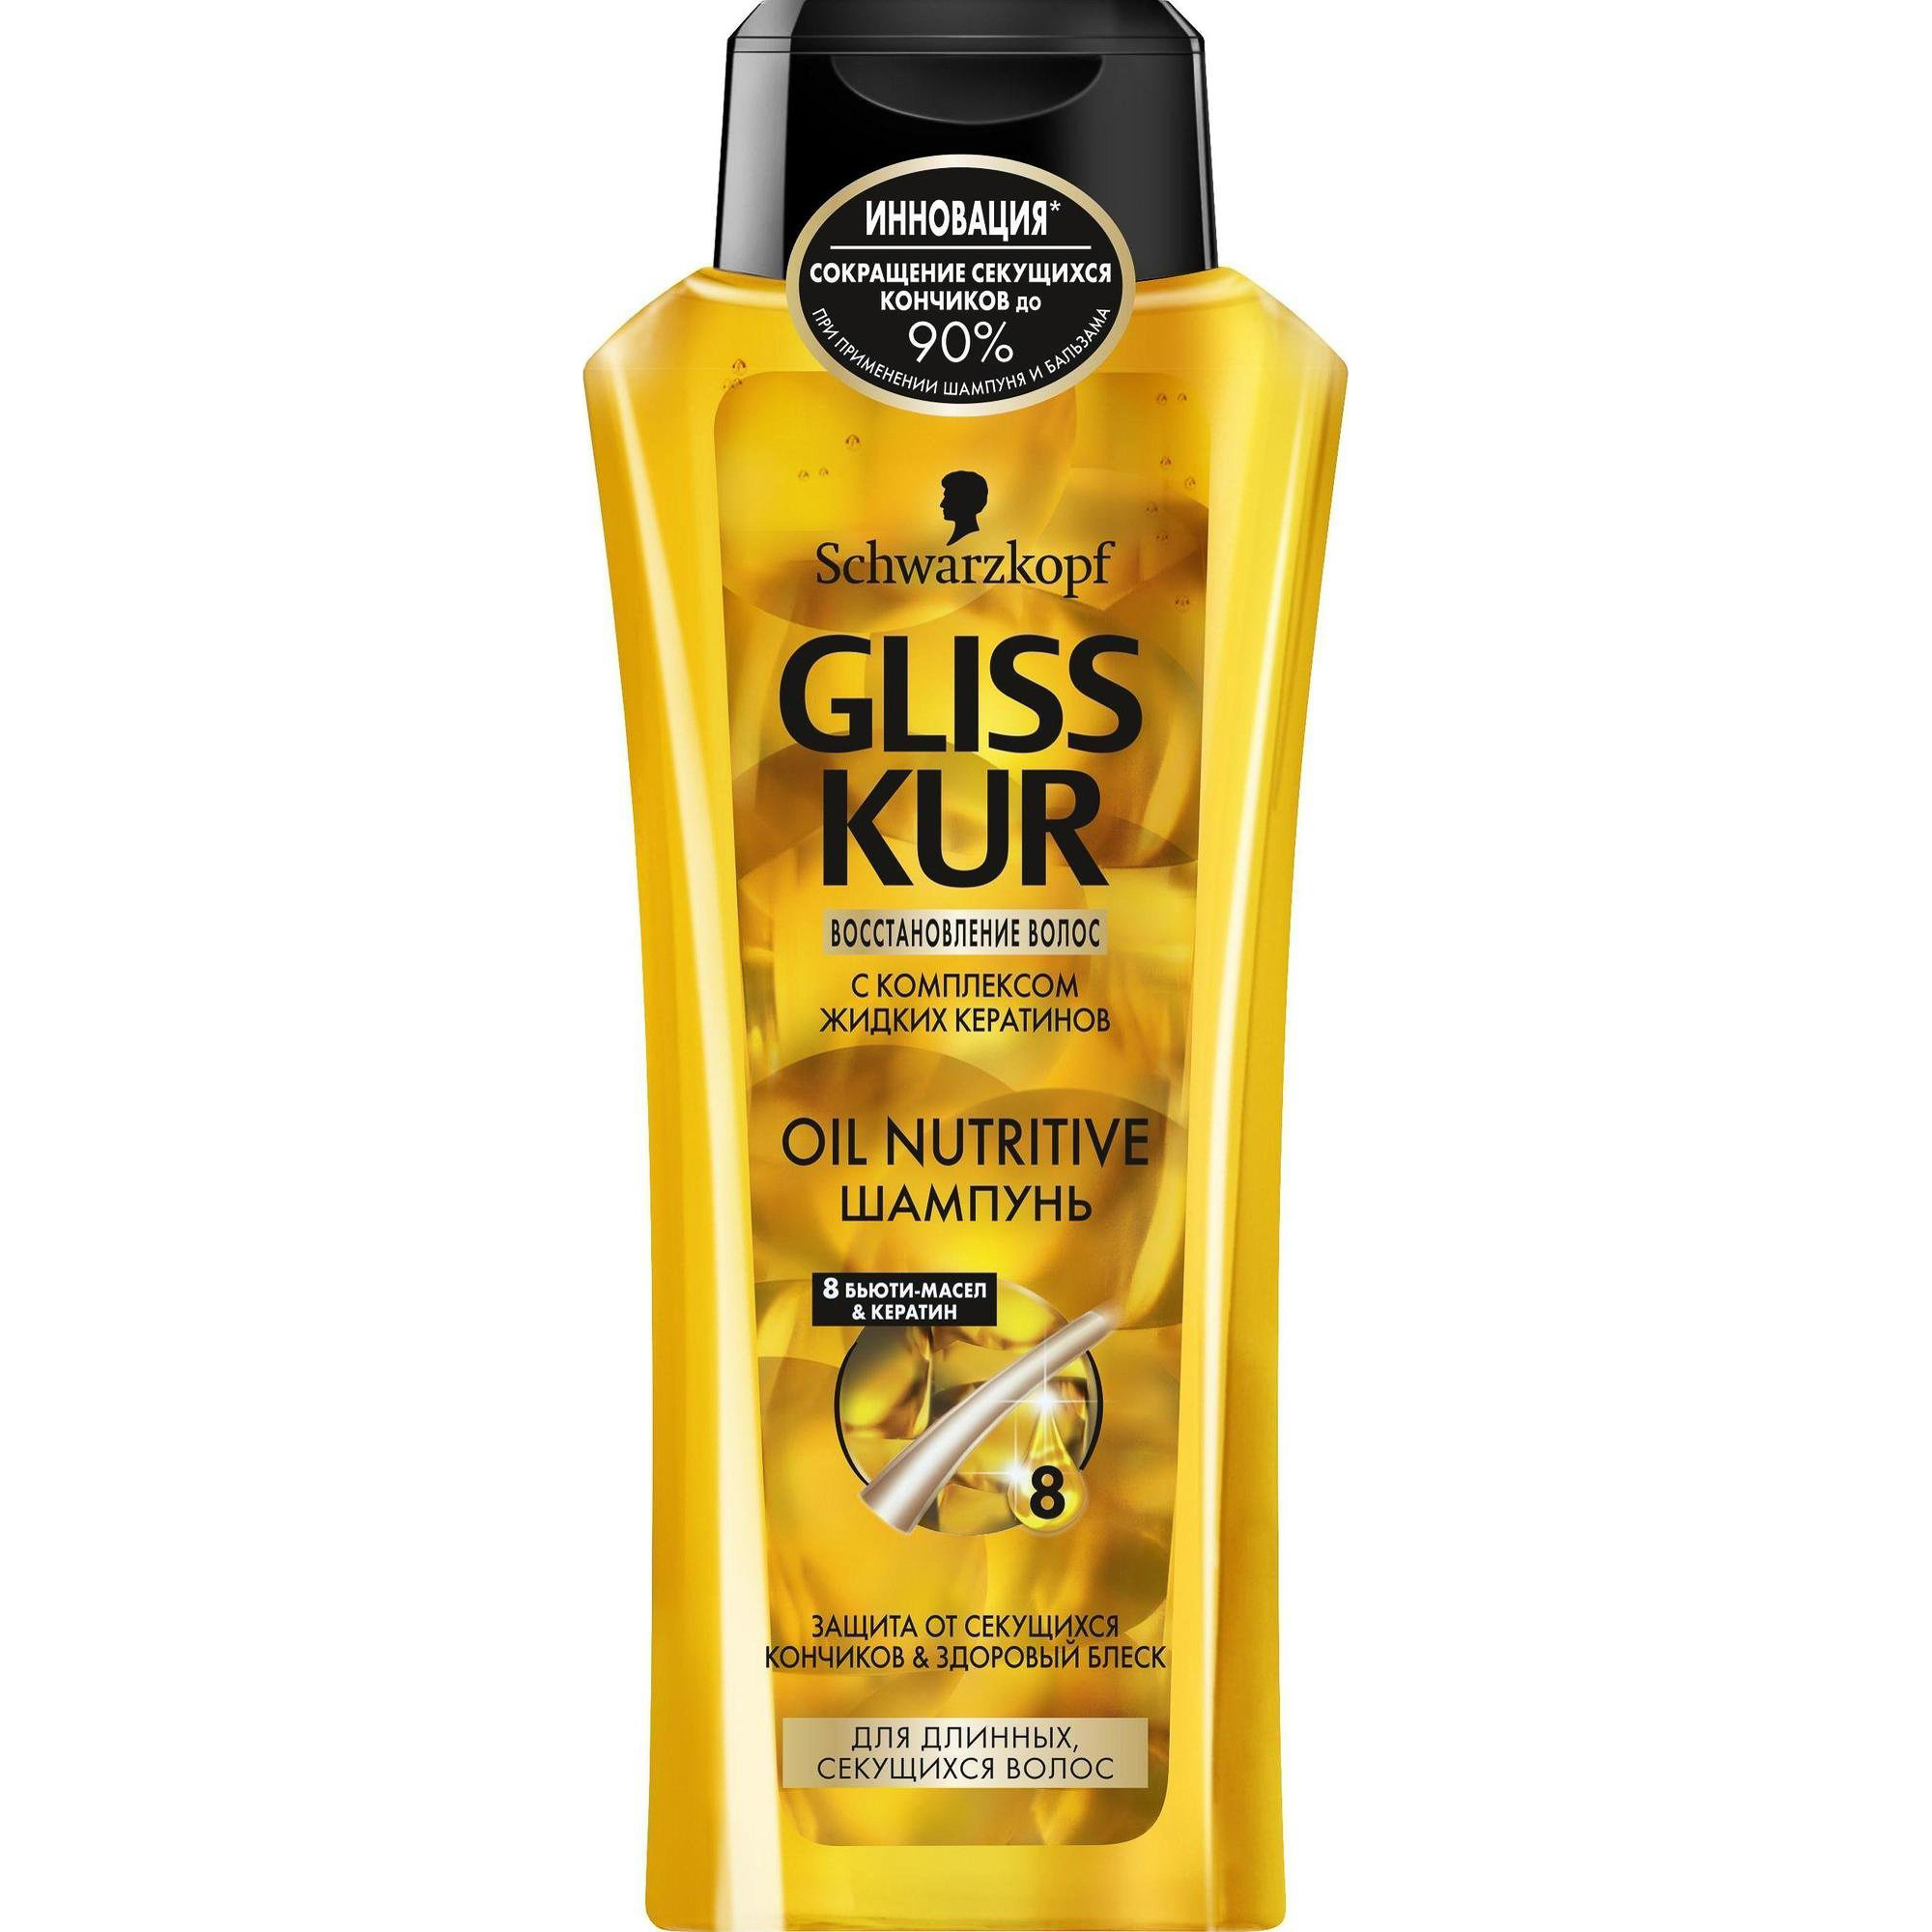 Шампунь GLISS KUR Oil Nutritive 400 мл шампунь для волос gliss kur oil nutritive для длинных секущихся волос 250 мл